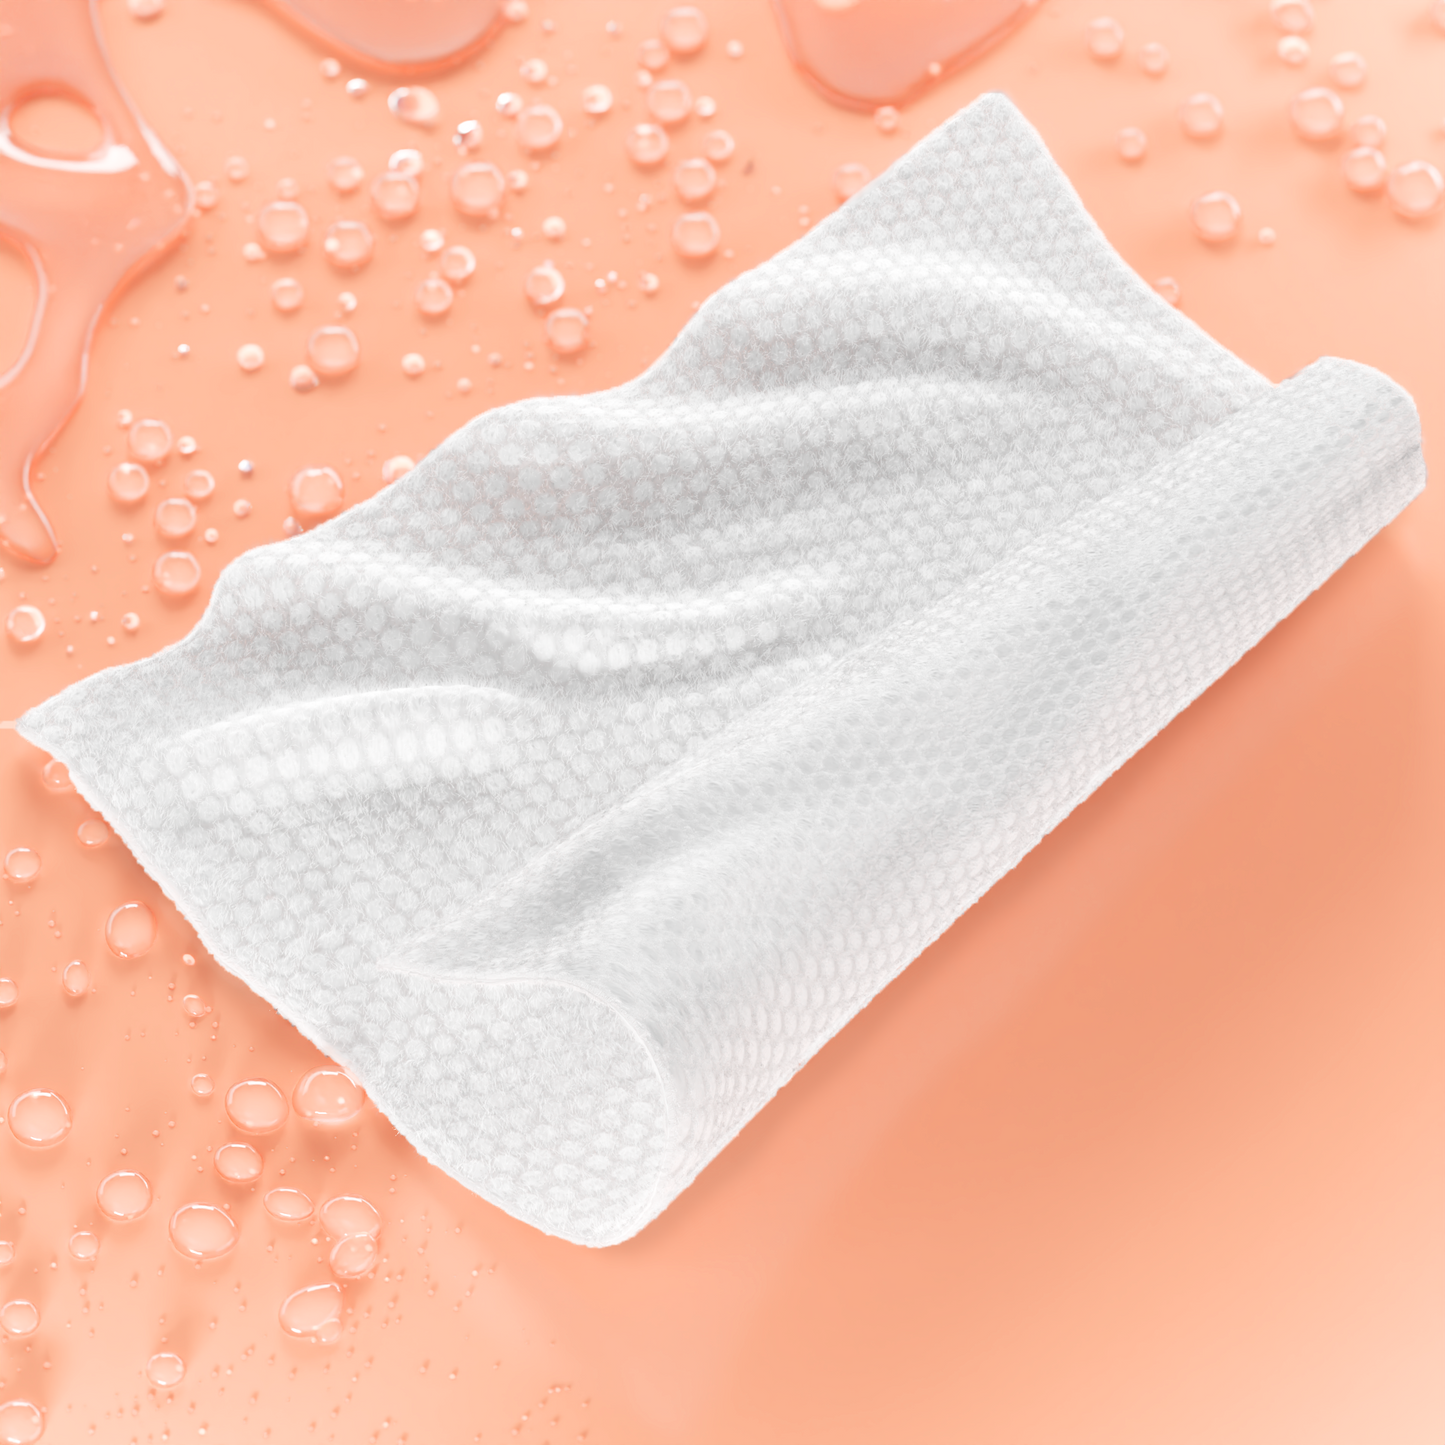 Premium Wipes de algodón 100% natural. Toallitas perfectas para el cuidado facial.